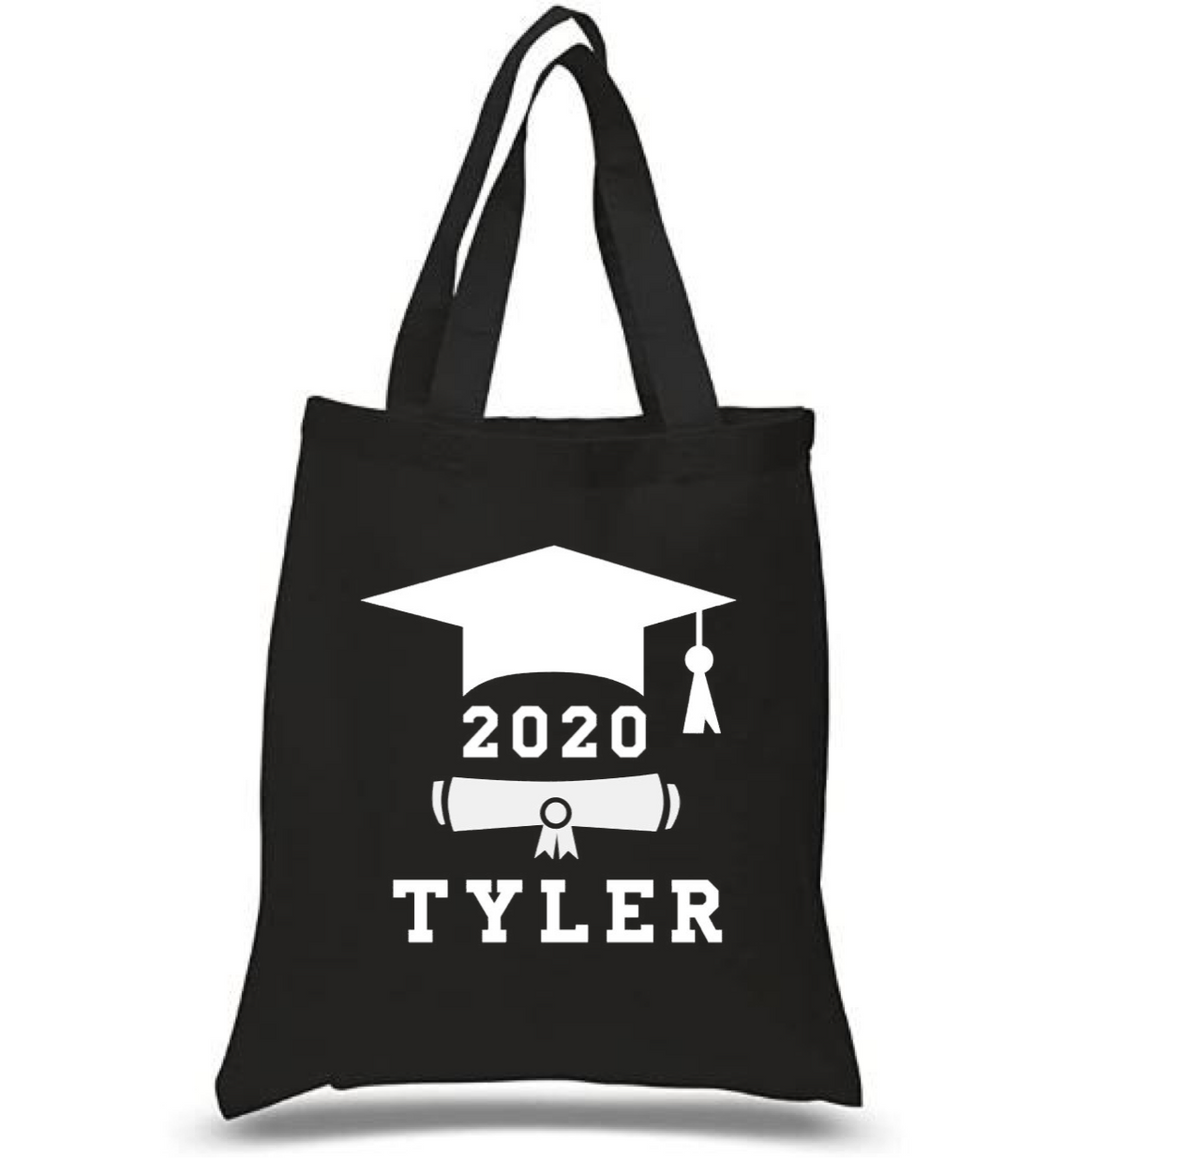 Tote Bag: Graduate Cap & Diploma * Personalized